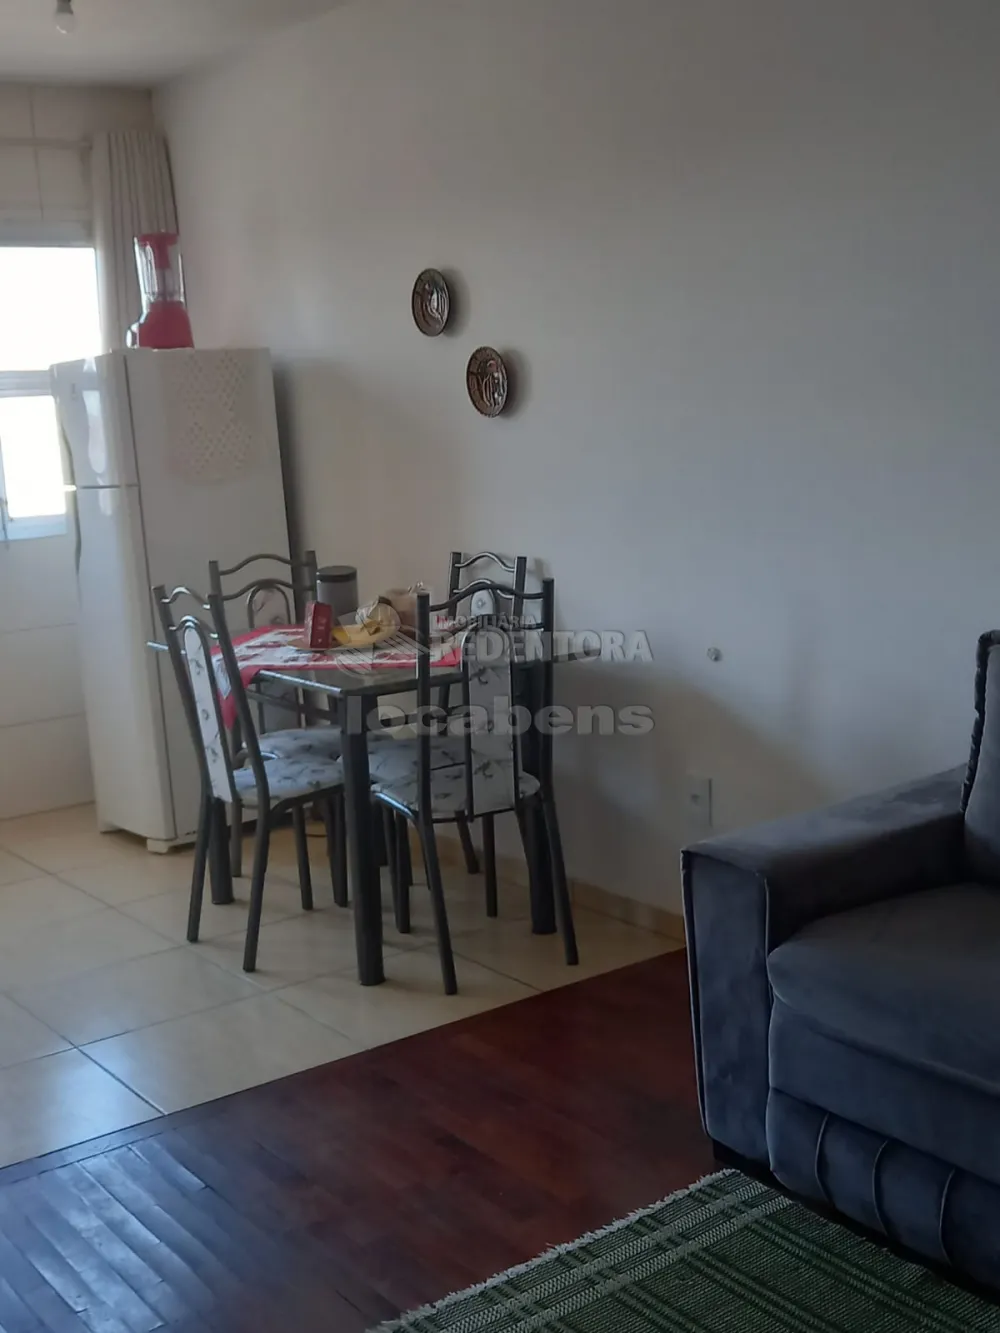 Comprar Apartamento / Padrão em São José do Rio Preto apenas R$ 198.000,00 - Foto 5